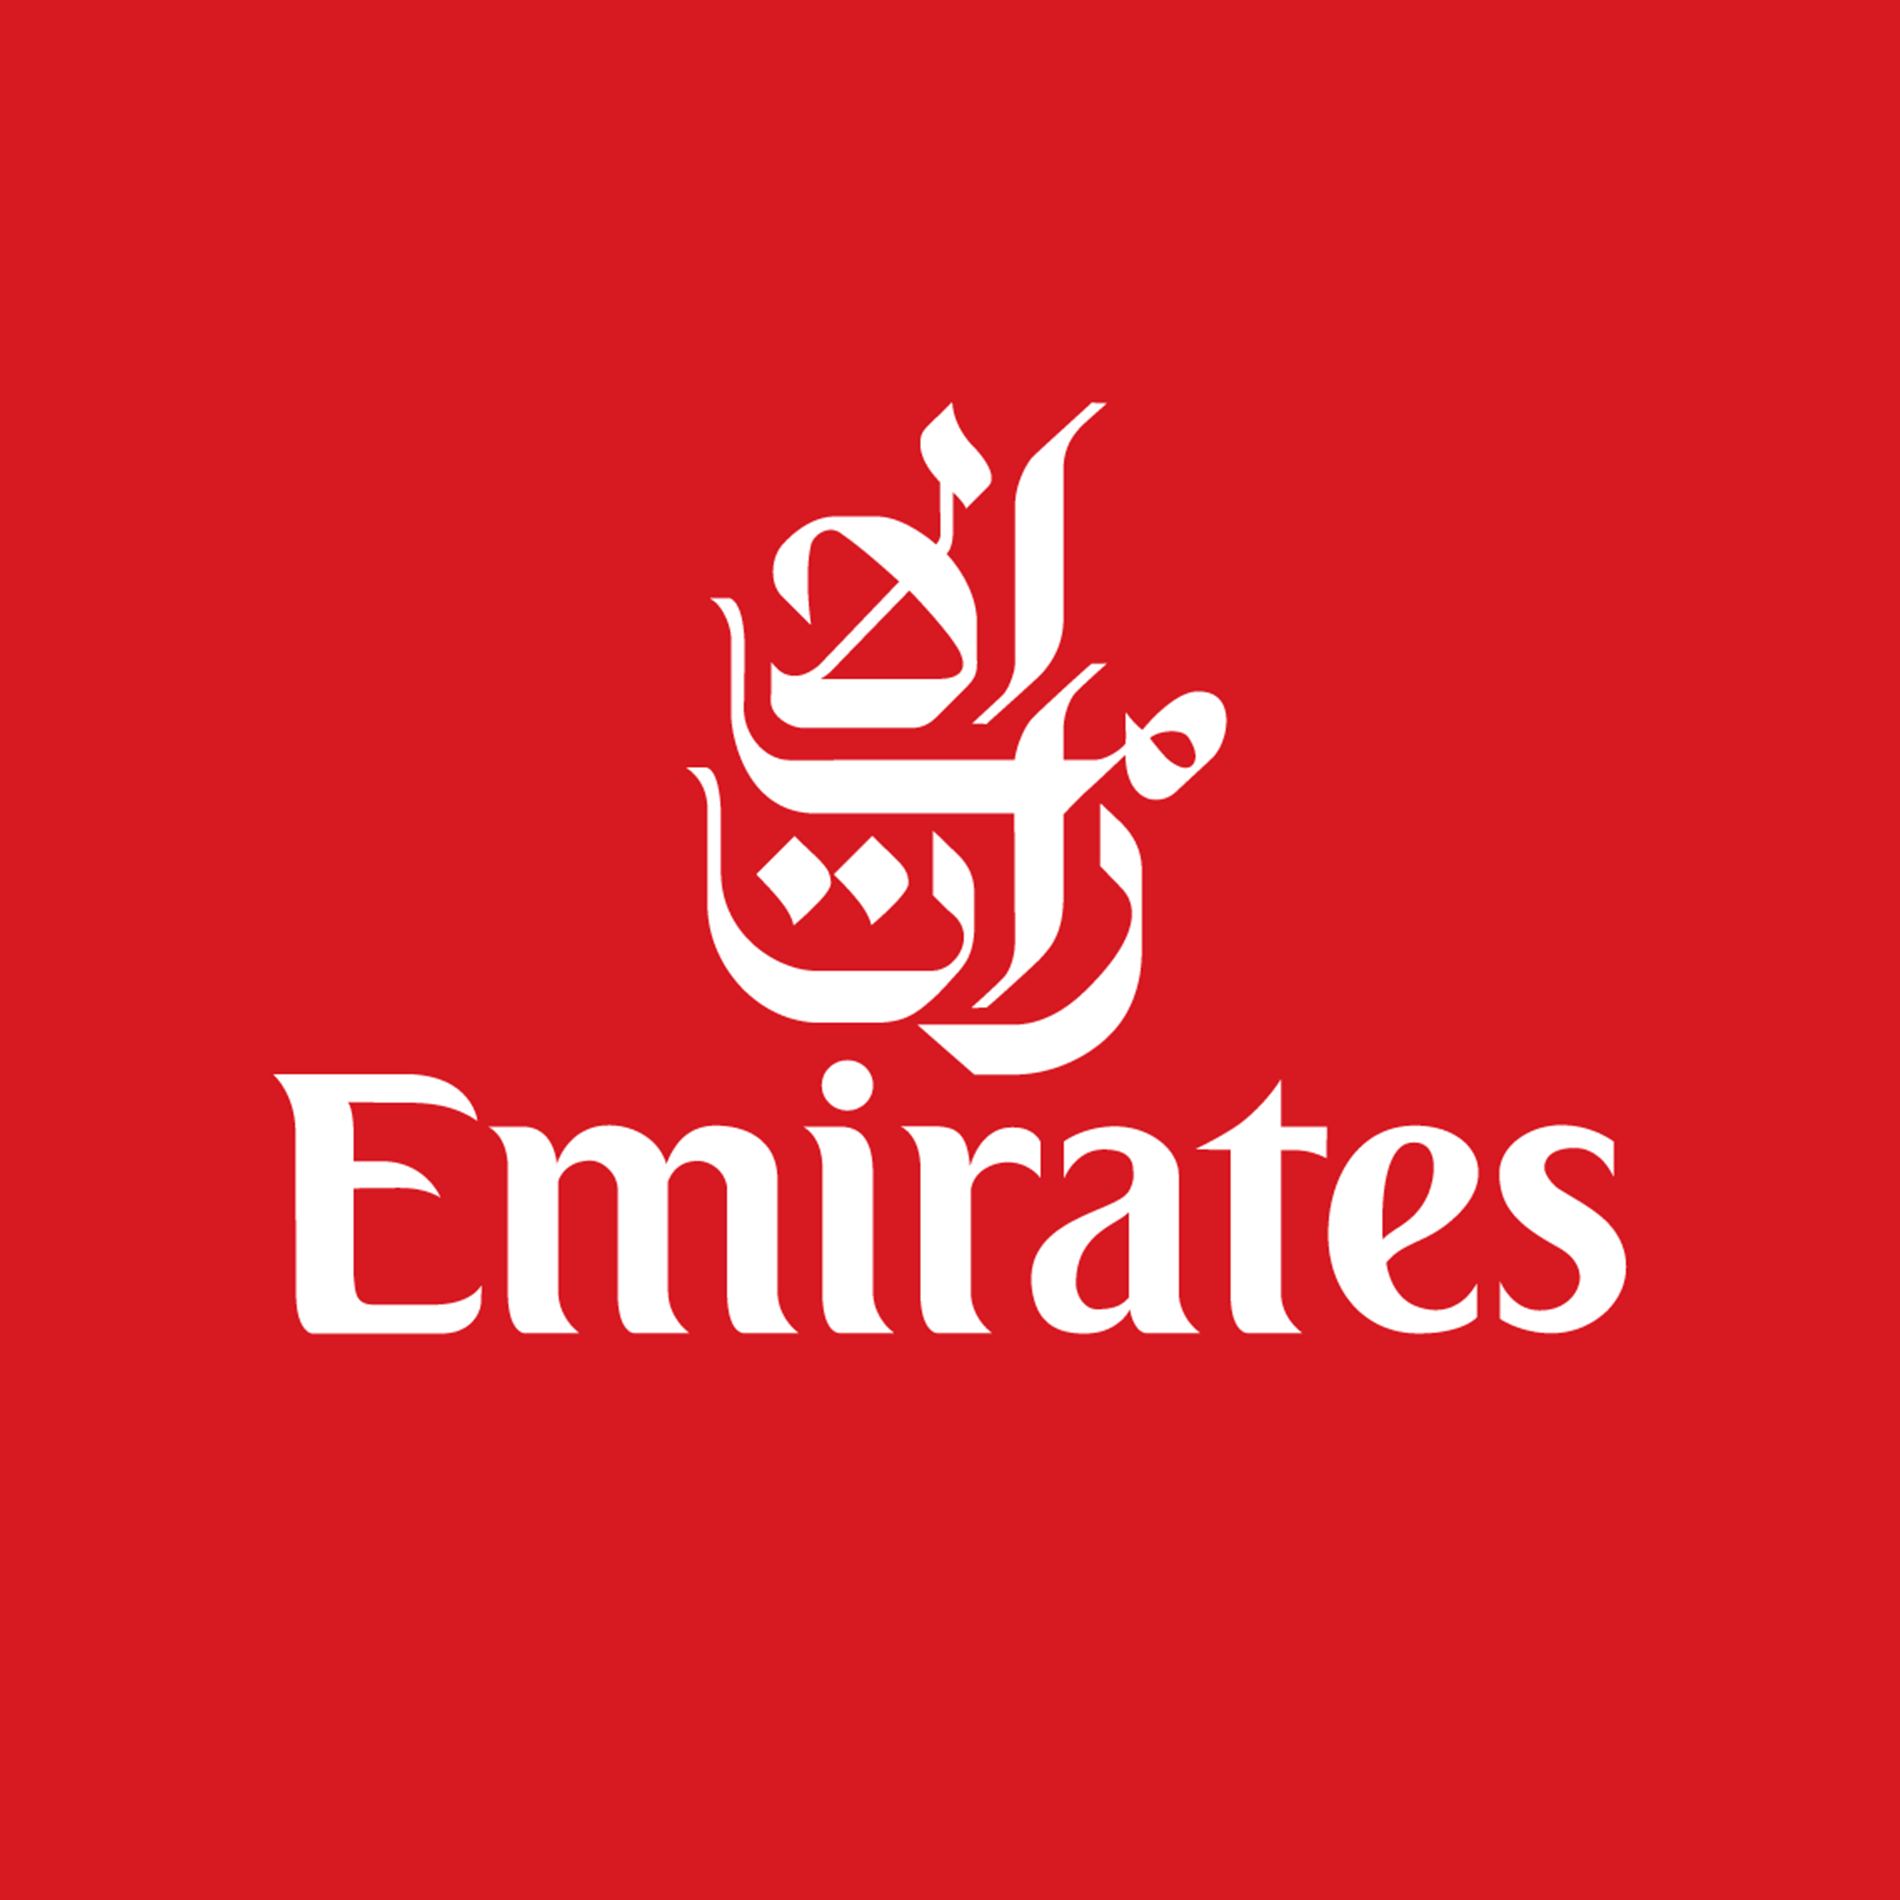 قامت شركة طيران الإمارات بالإعلان عن وظائف شاغرة من خلال الموقع الإلكتروني الخاص بها تحت المسمى الوظيفي مساعد عمليات الشحن ويمكن للحاصلين على الثانوية العامة التقديم على هذه الوظائف.